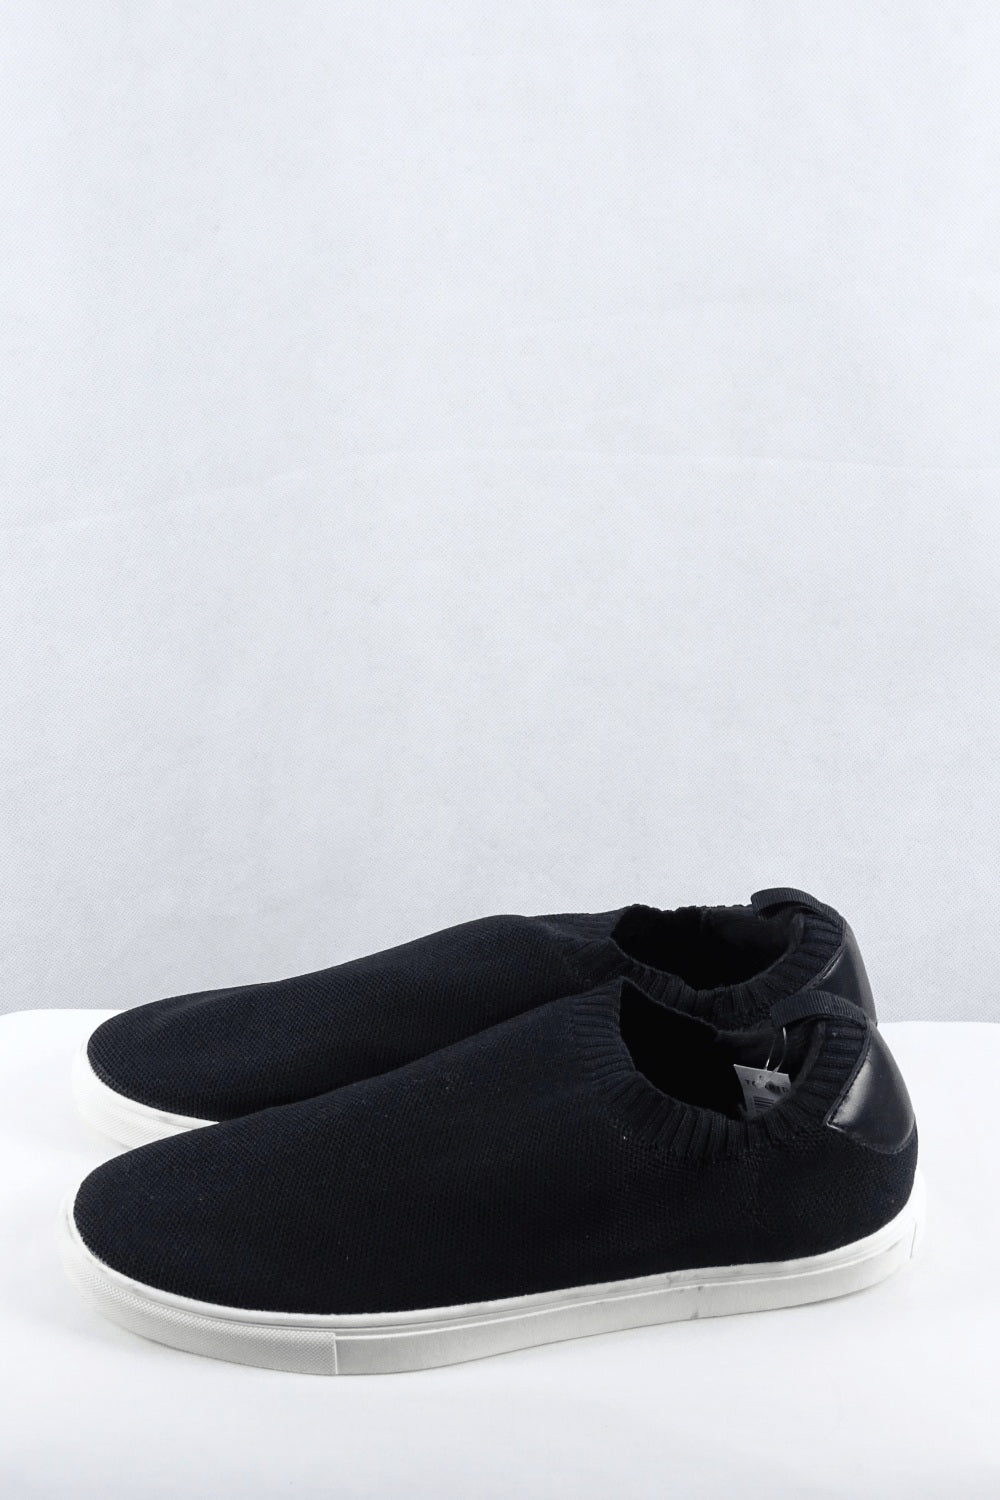 Torrid Black Sneakers 13